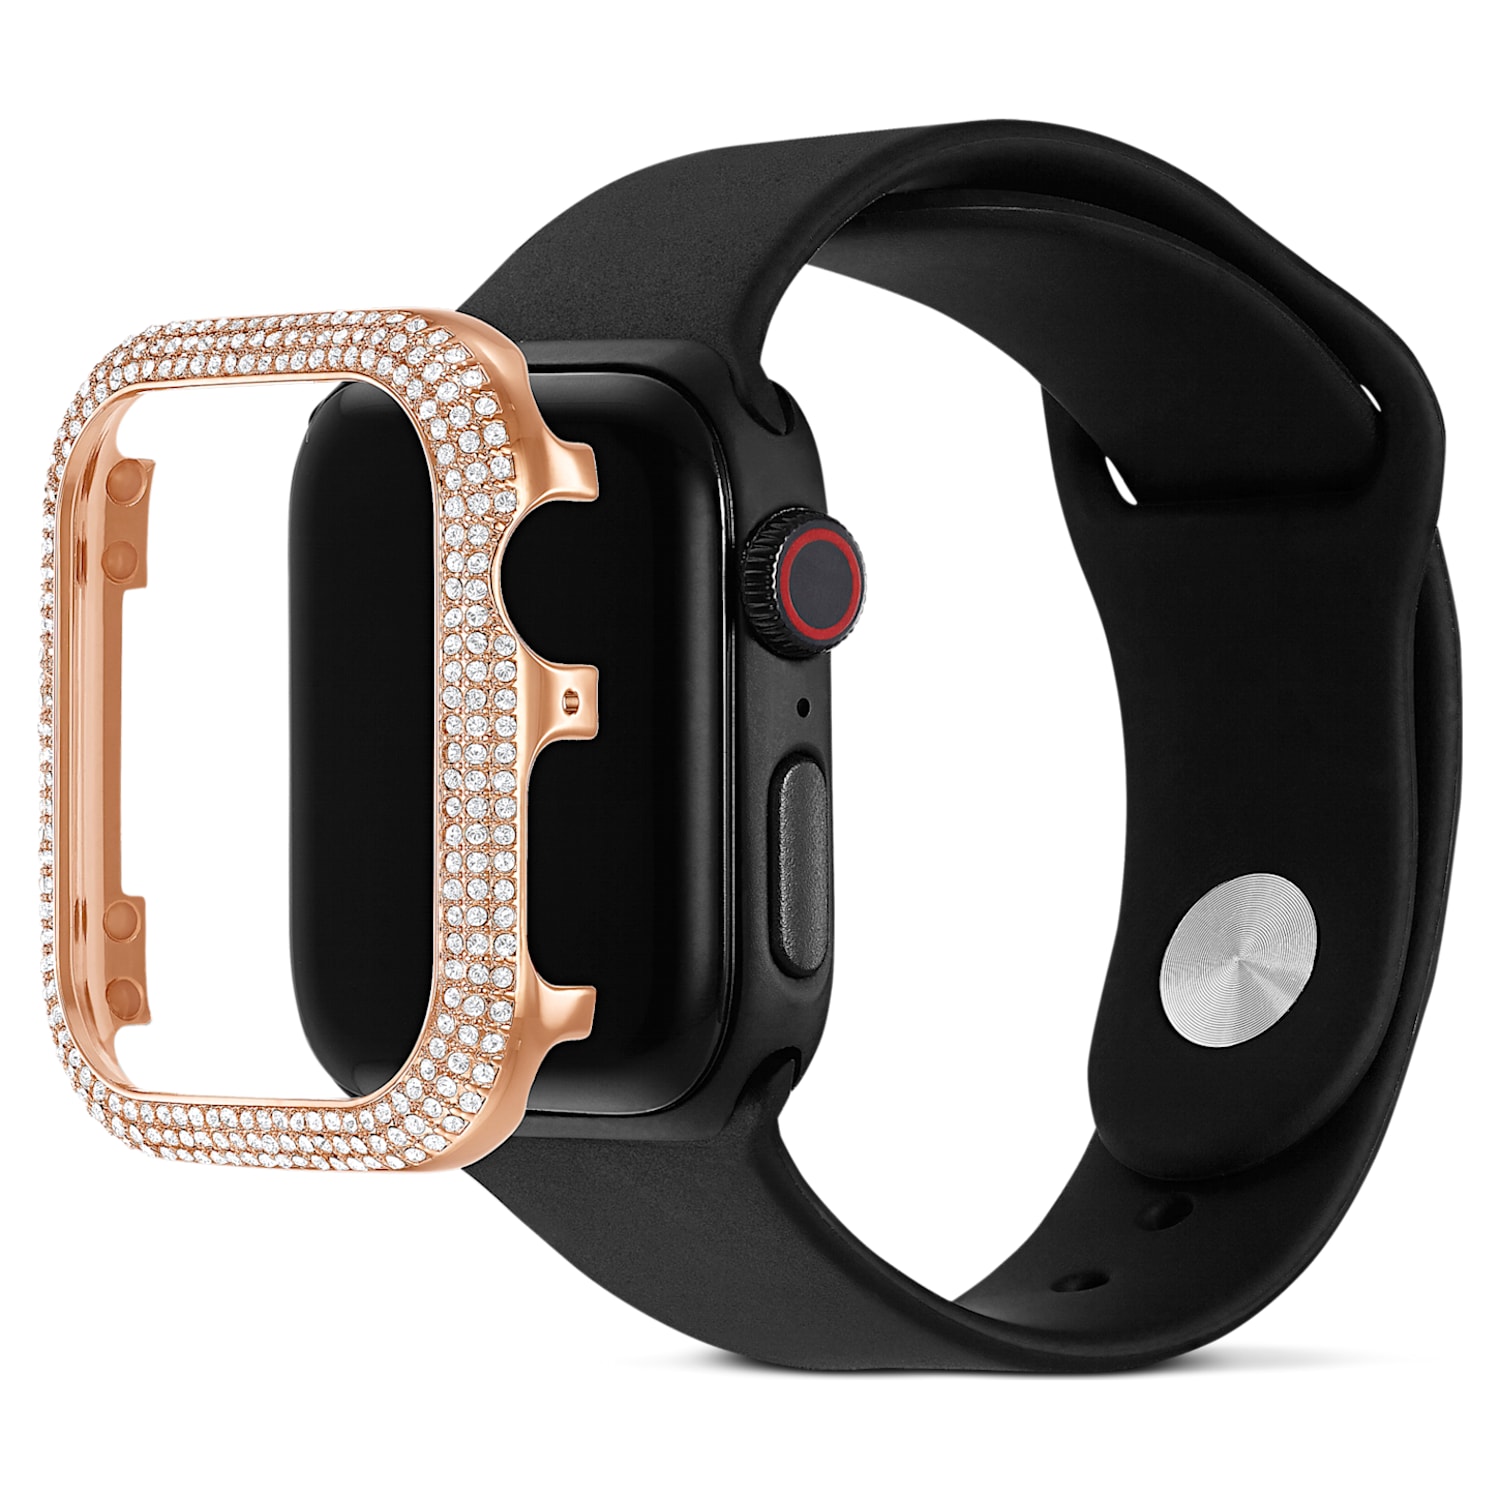 スマートウォッチ、ウェアラブル端末 スマートウォッチ本体 Sparkling Apple Watch® 対応ケース, 40mm, ローズゴールドカラー 